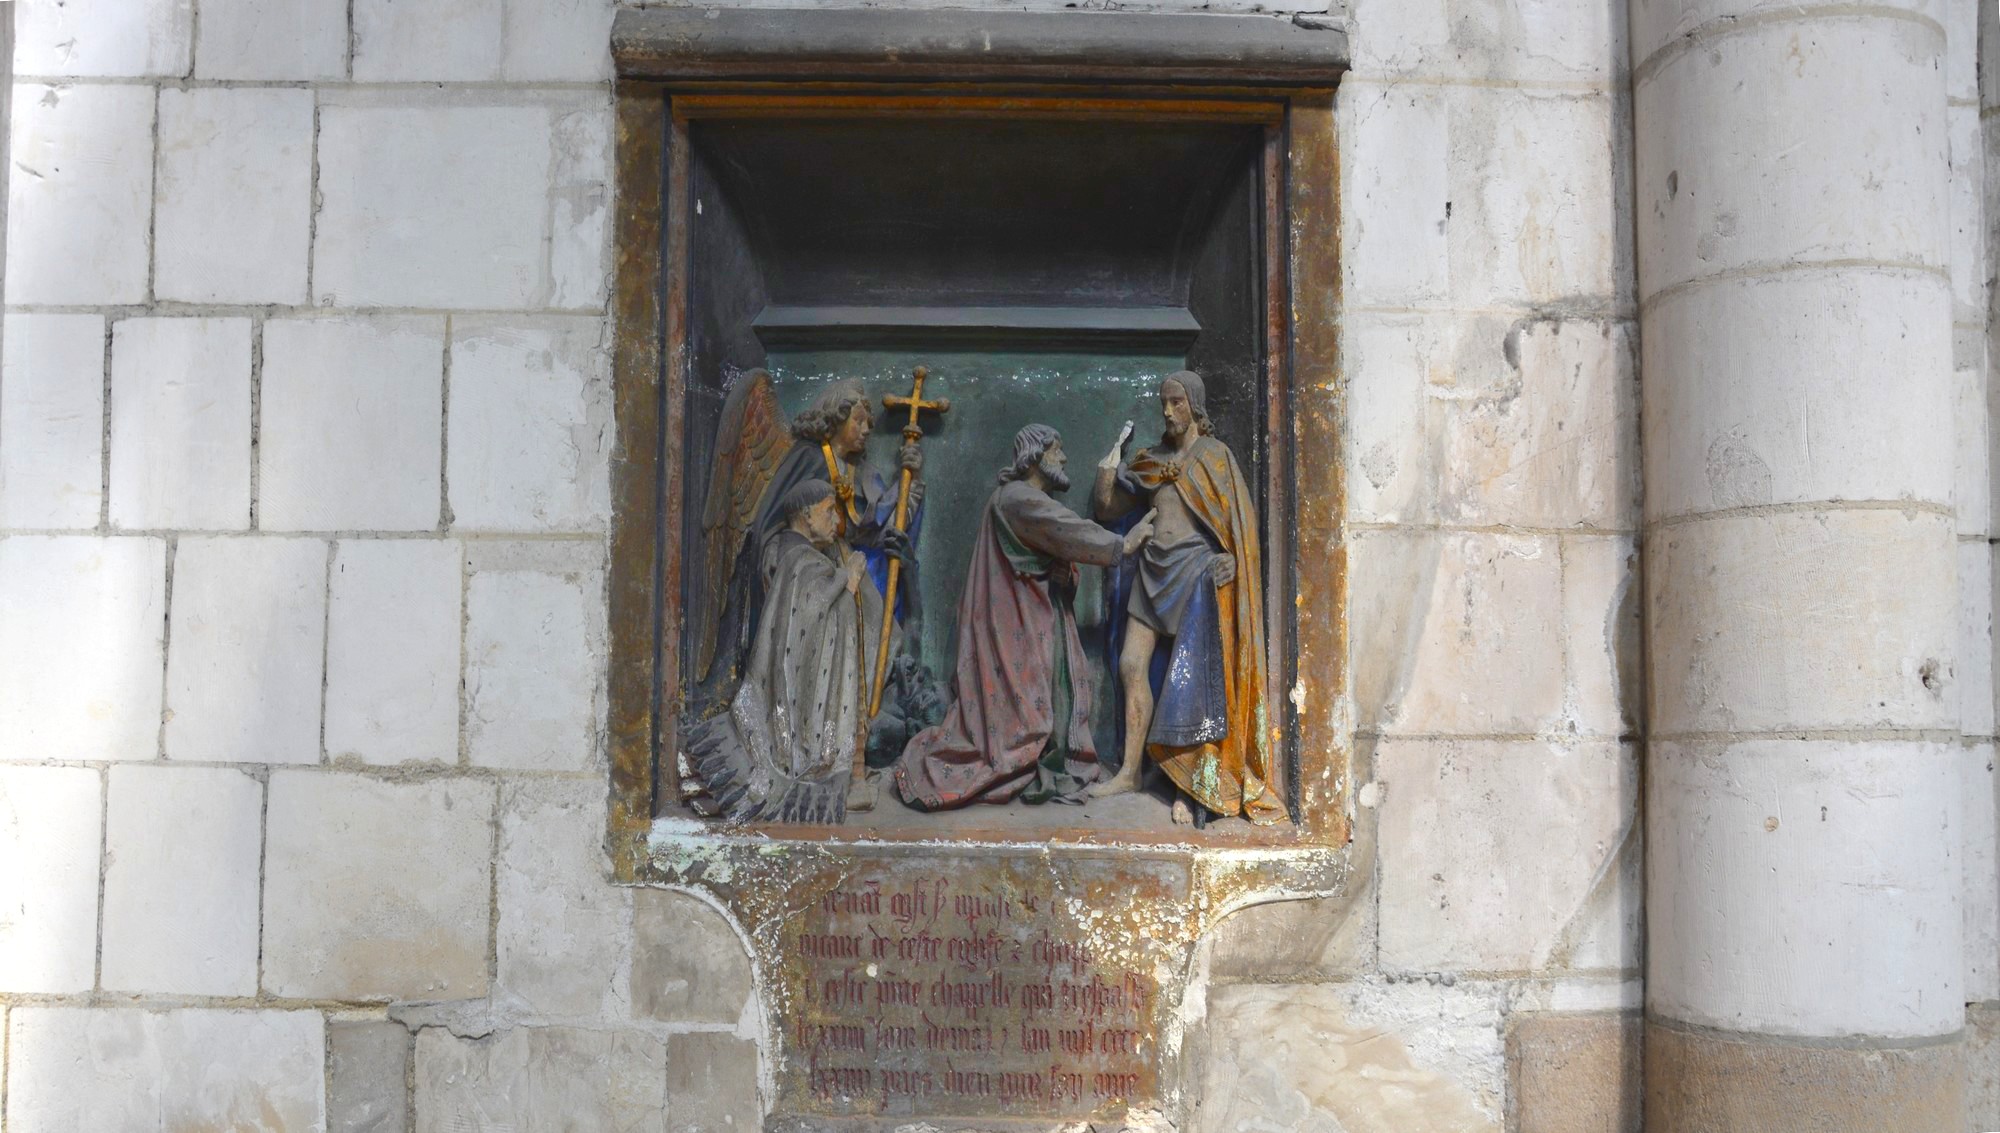 Cathédrale de Saint-Omer|transept nord est  encastré  dans la muraille, une sculture  de 1474, monument funéraire d'un ancien  vicaire  présenté  par  son patron  saint Michel, rappelle  la  scène  évangélique  de saint Thomas apôtre